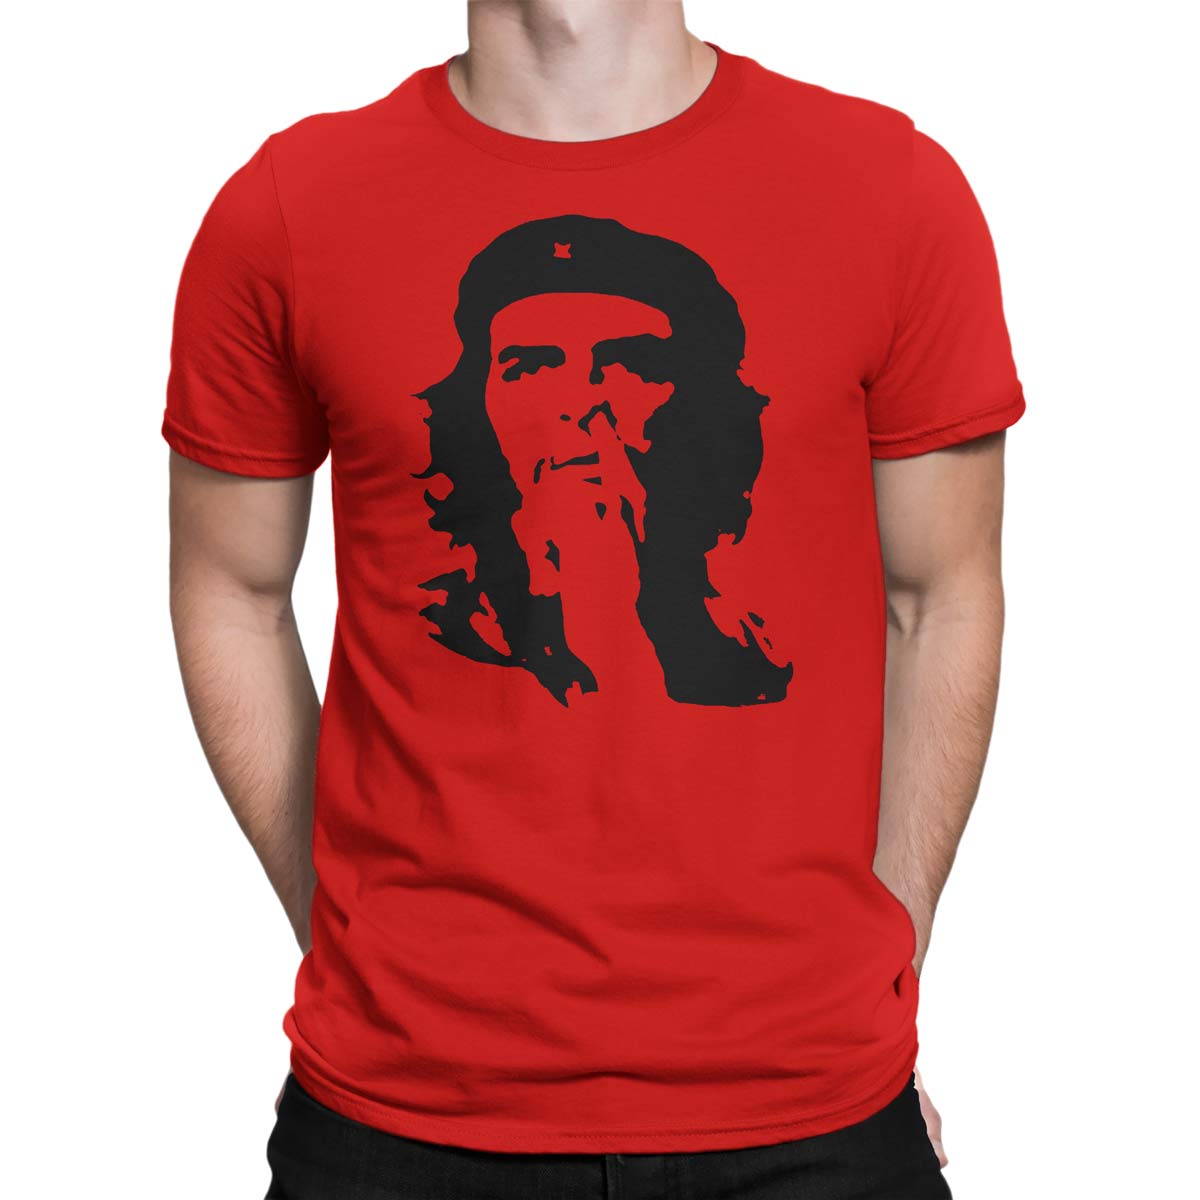 Che Guevara Barry ironique Homme Kids T-shirt cadeau de nouveauté amusant Haut Tee 